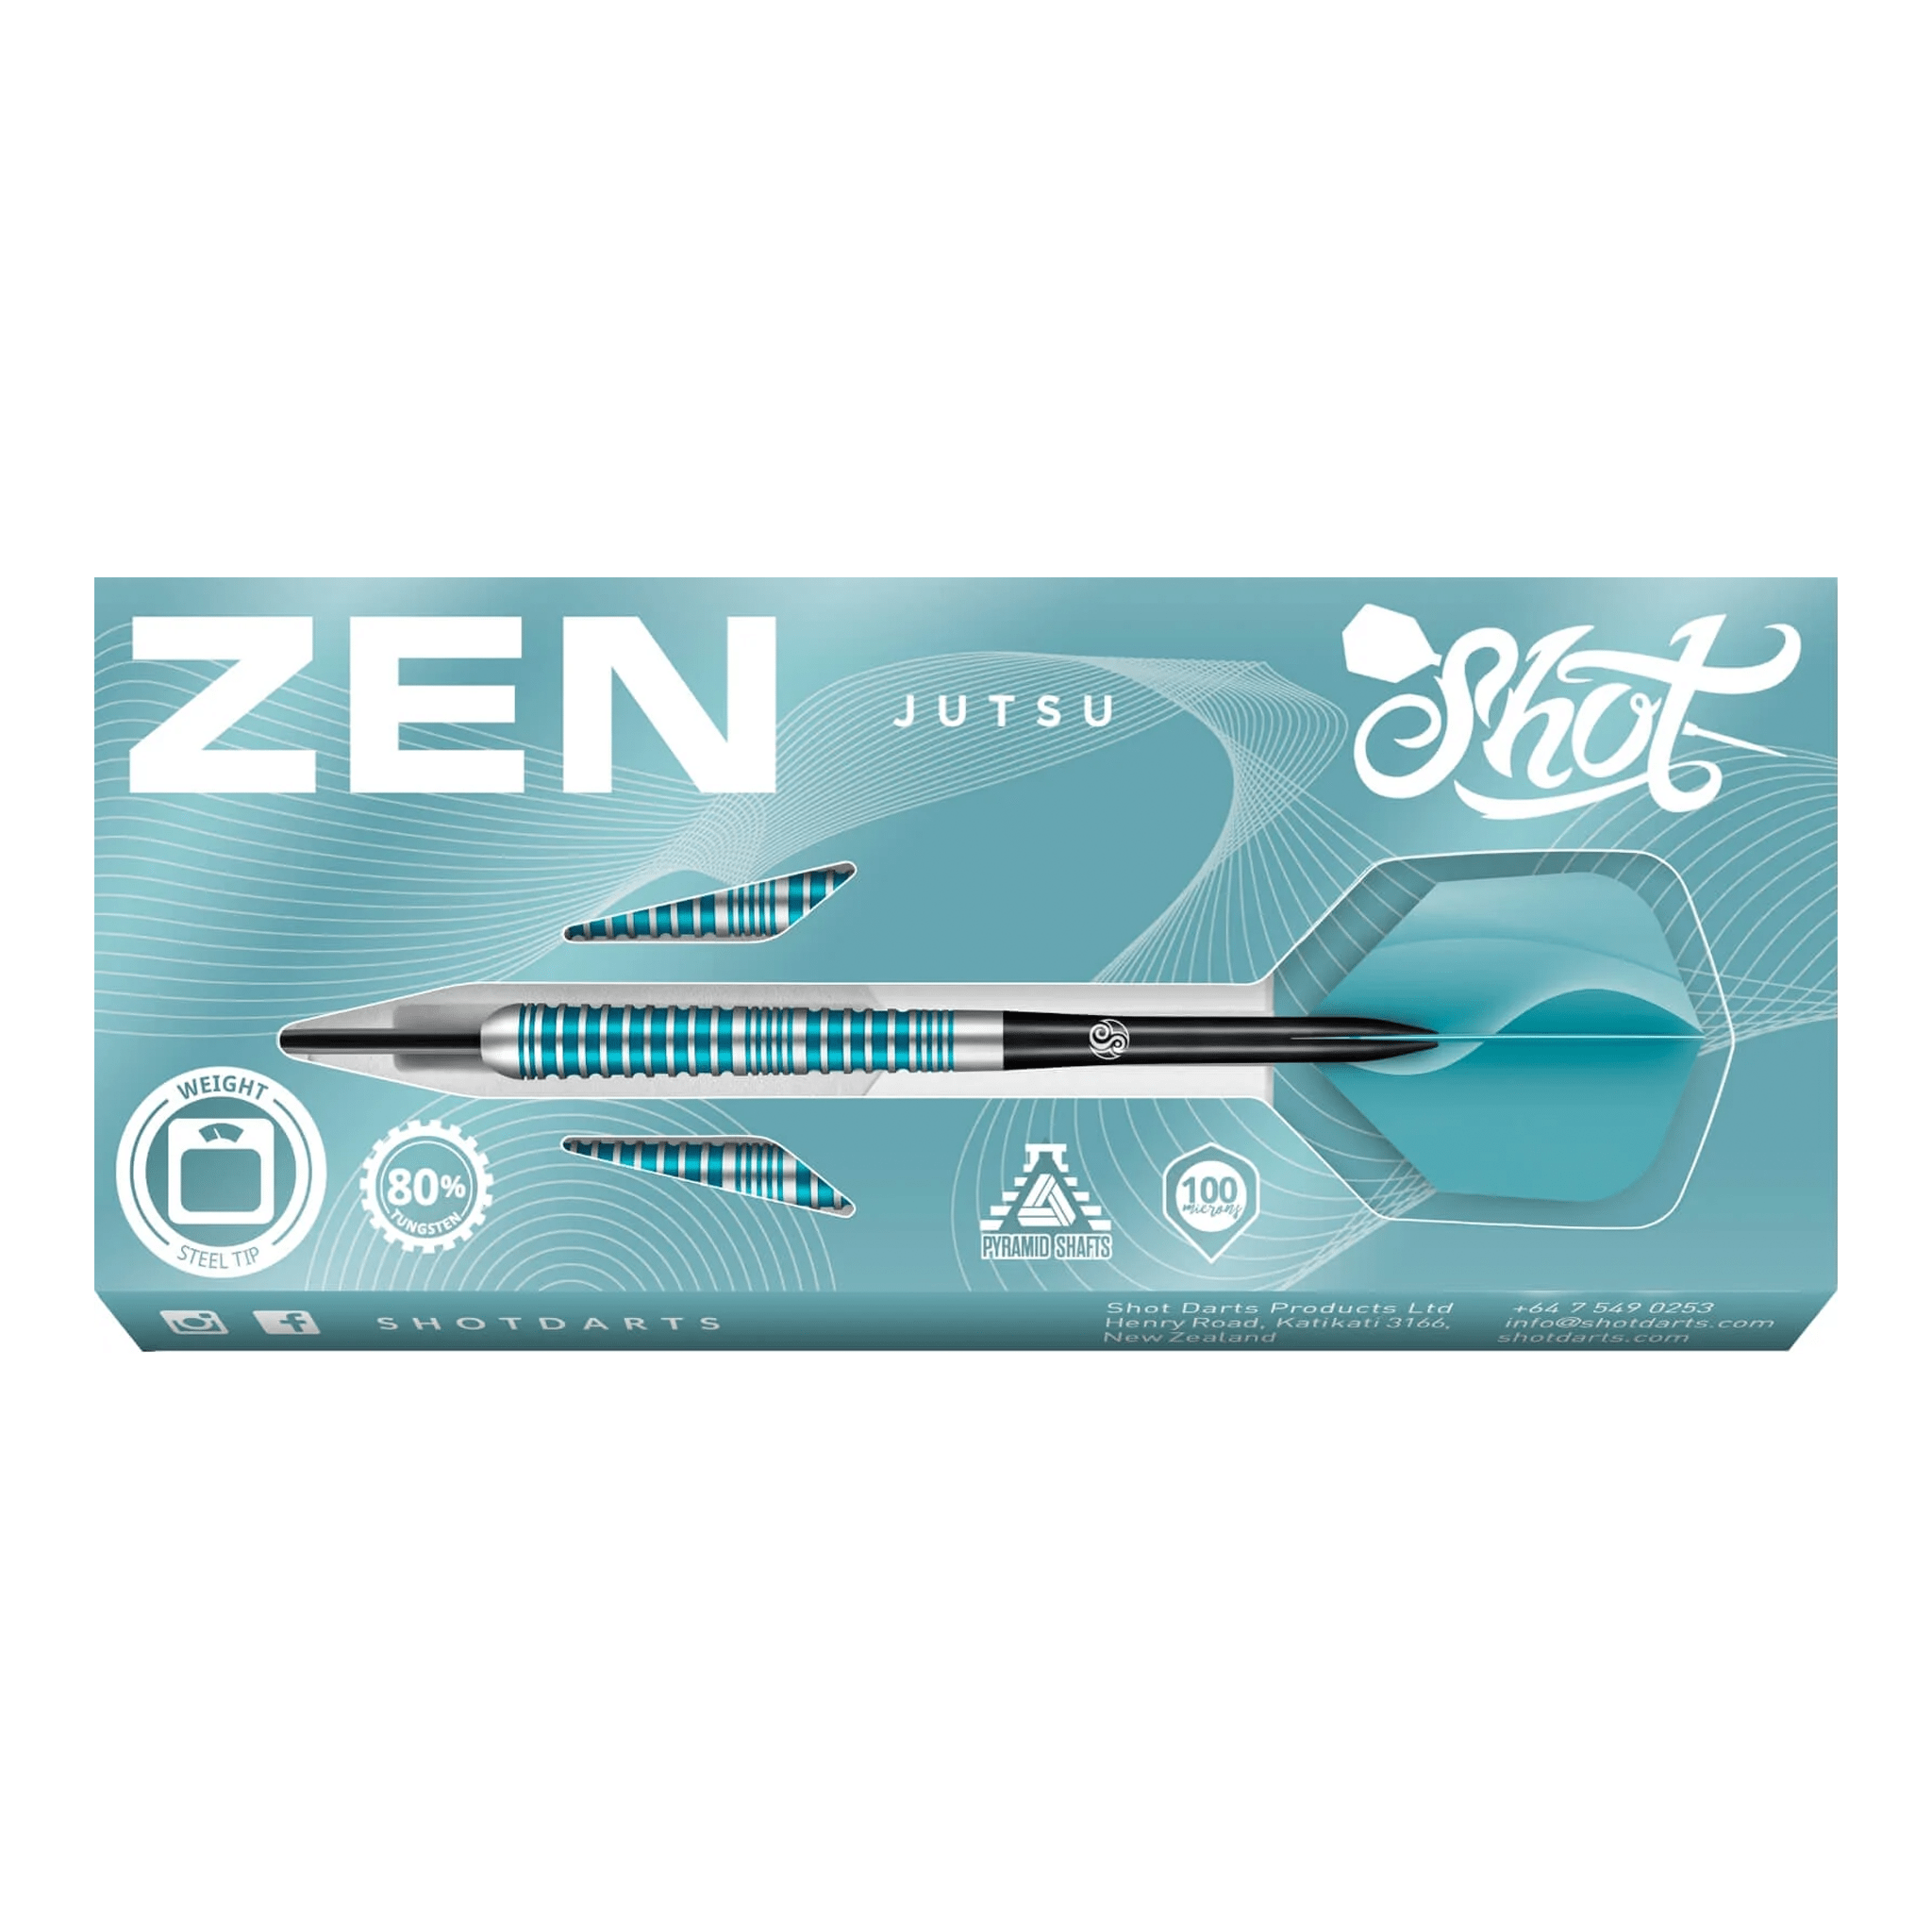 Shot Zen Jutsu - 80% Tungsten Steel Tip Darts Darts